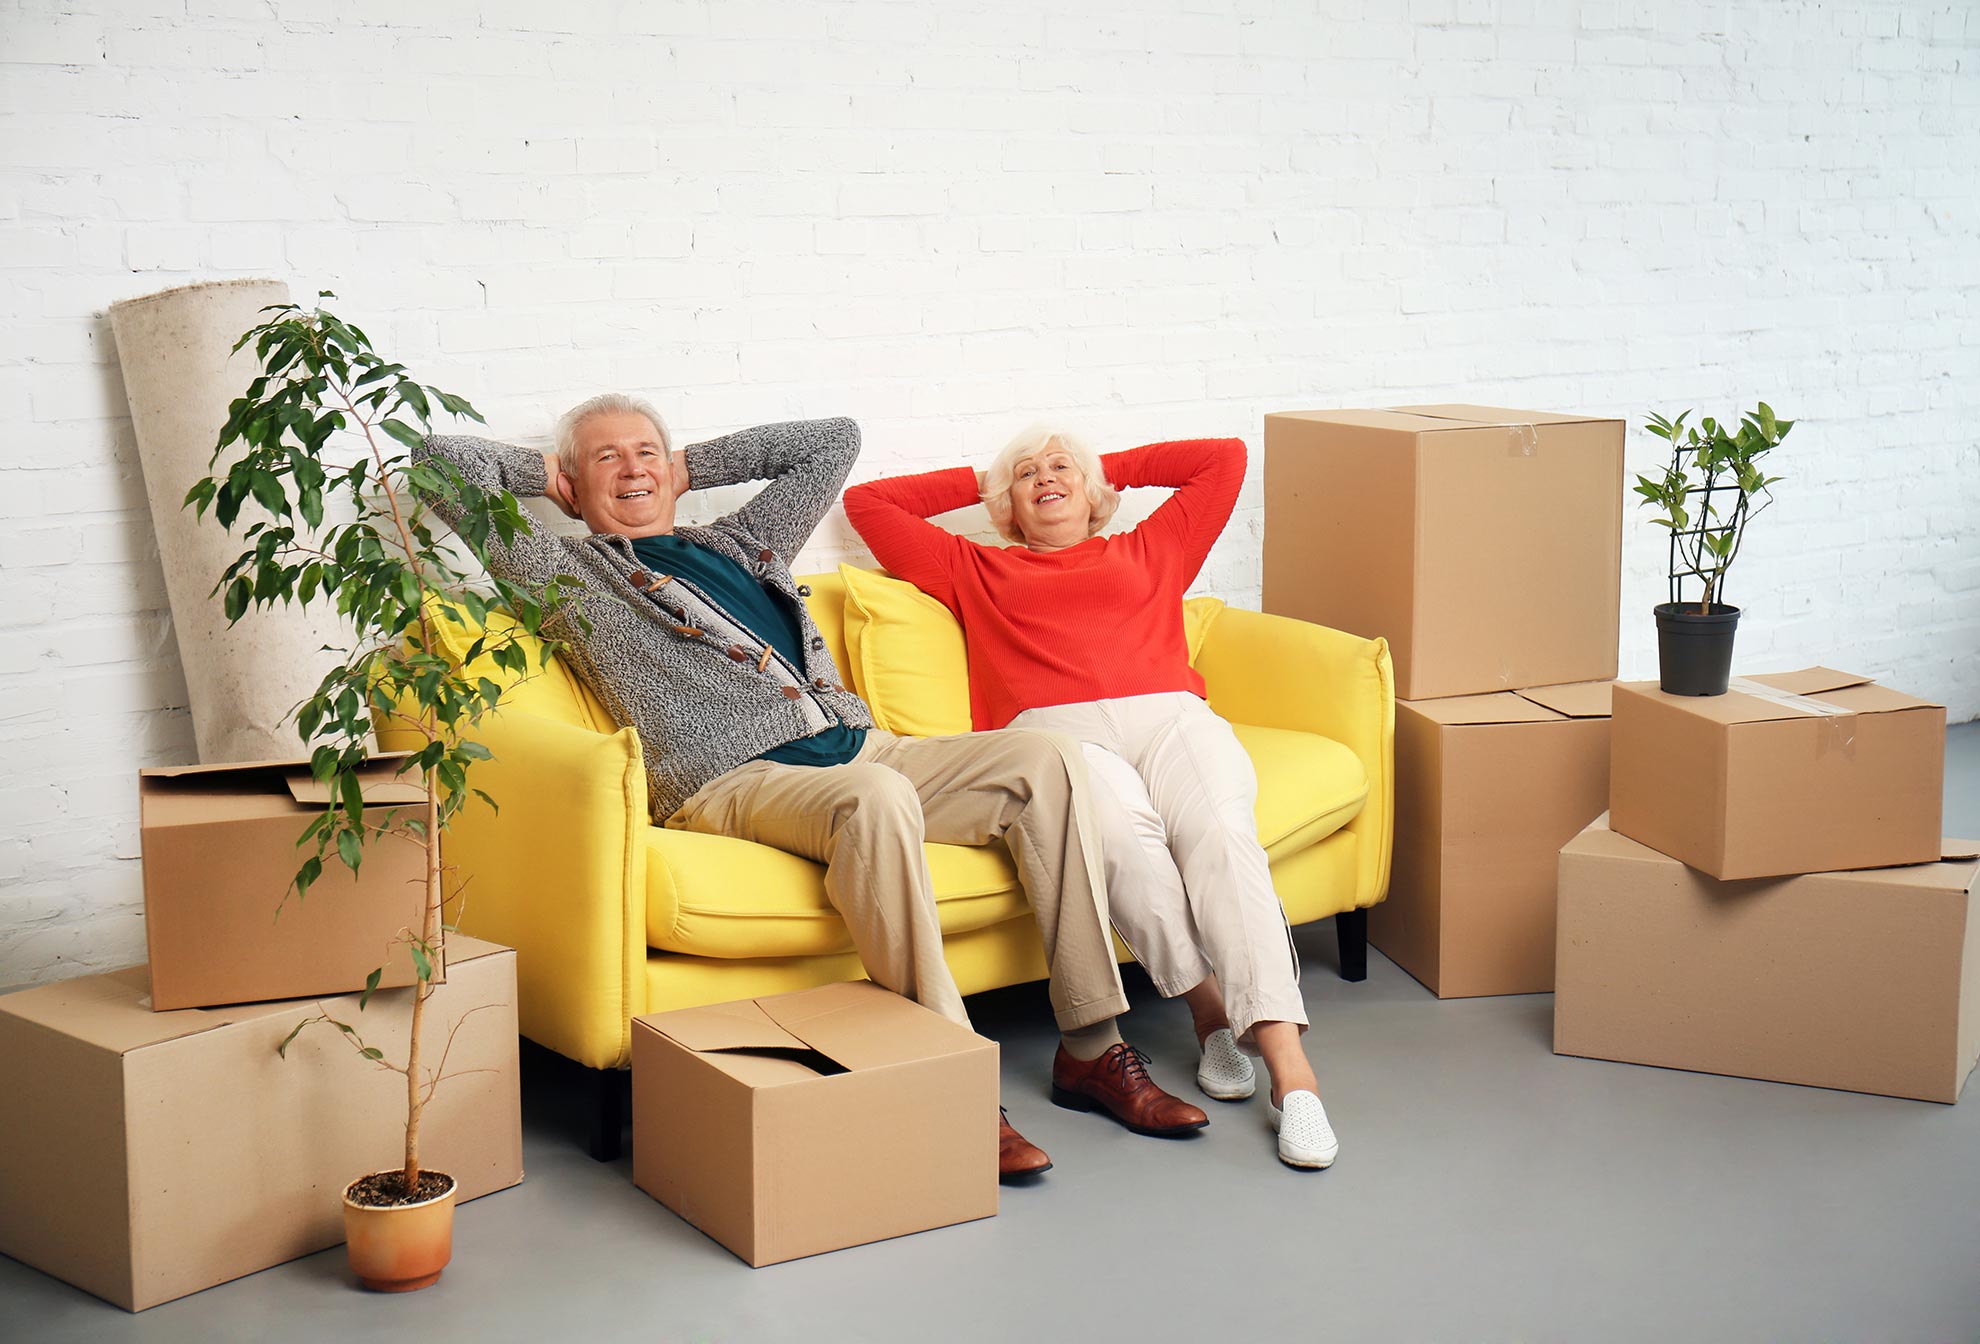 Ein älteres Ehepaar sitzt fröhlich zurückgelehnt auf einer gelben Couch. Links und rechts befinden sich Umzugskartons und eine Pflanze.